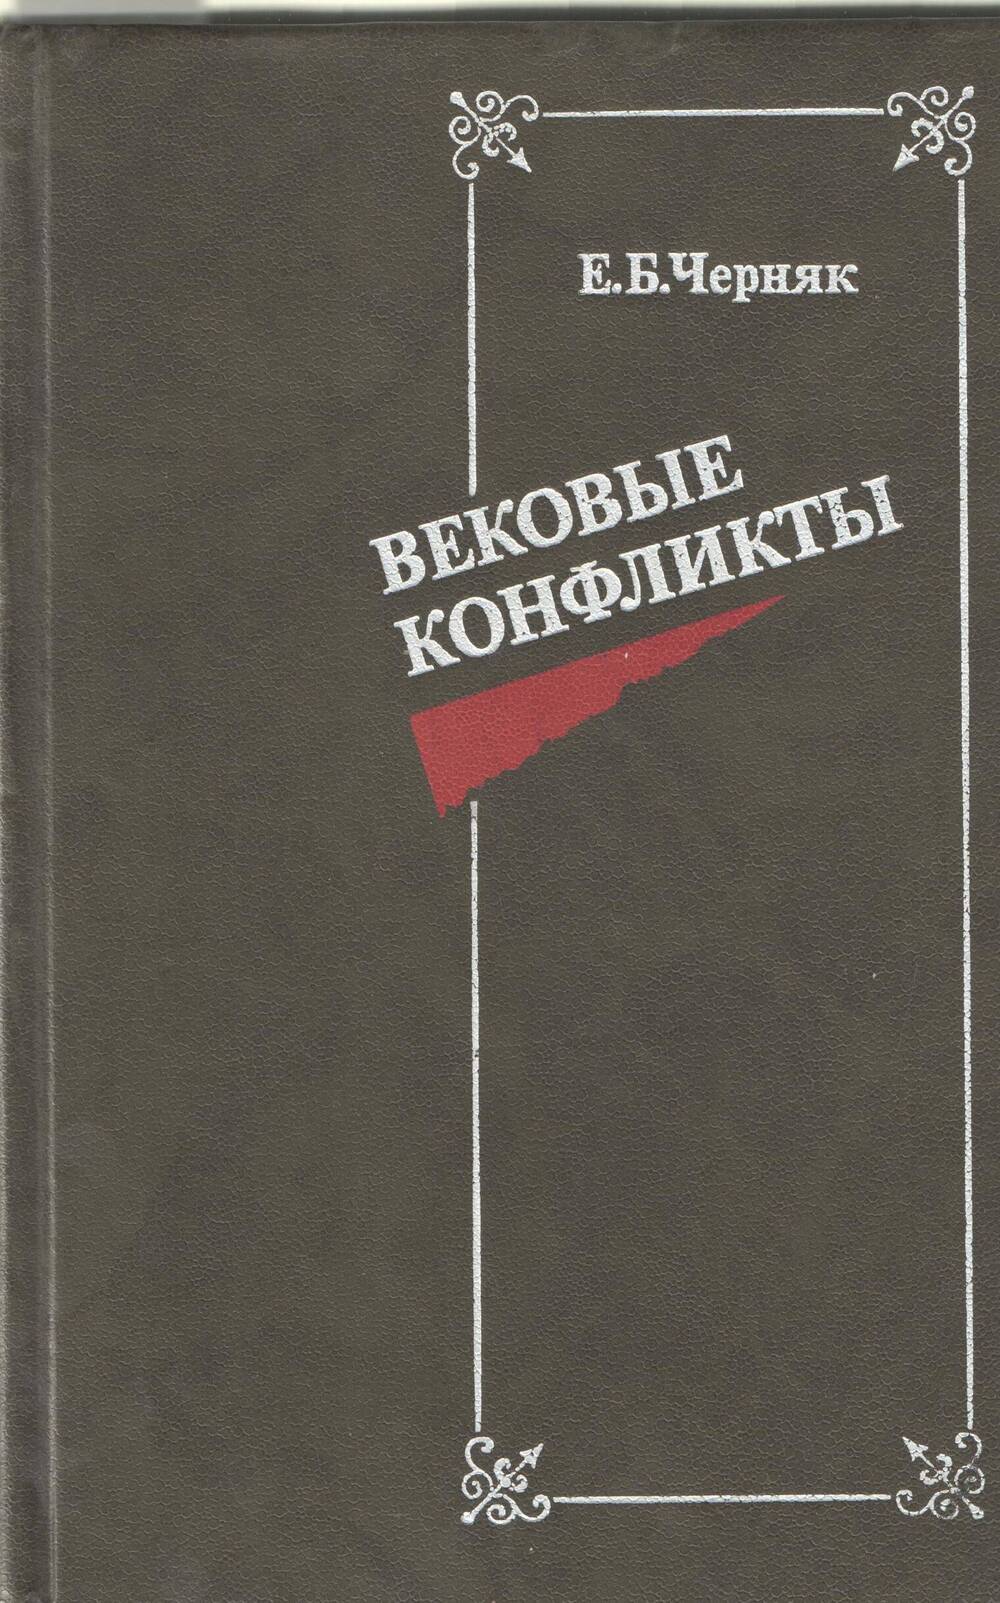 Книга Е.Б. Черняк Вековые конфликты.